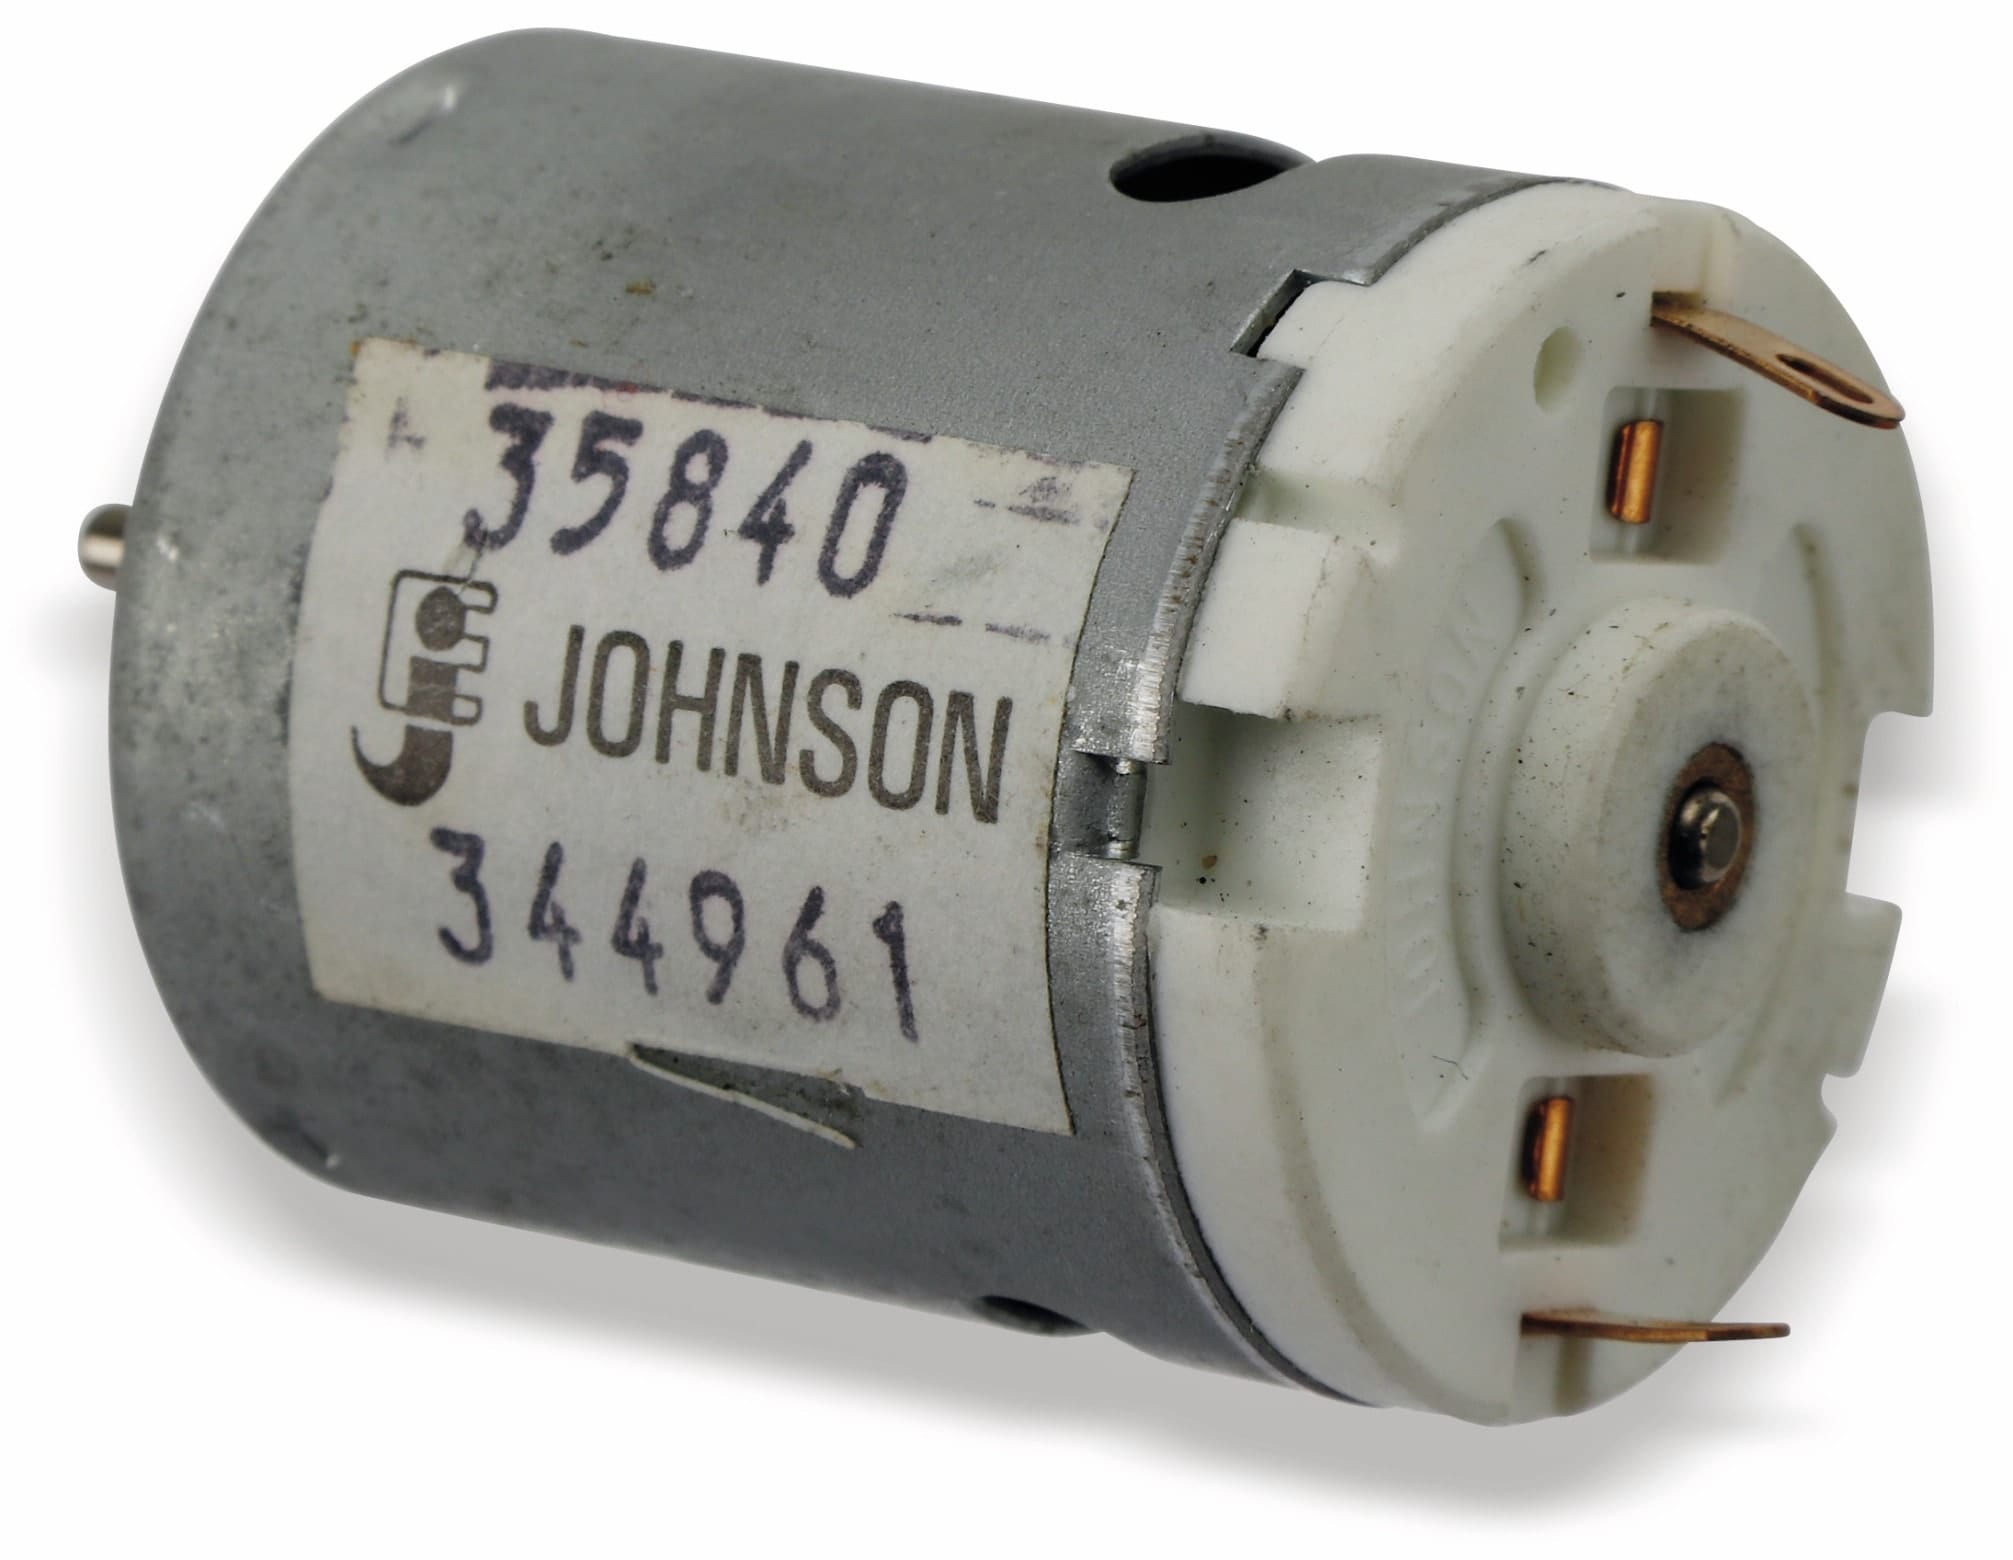 Johnson Gleichstrommotor 35840, 12V-